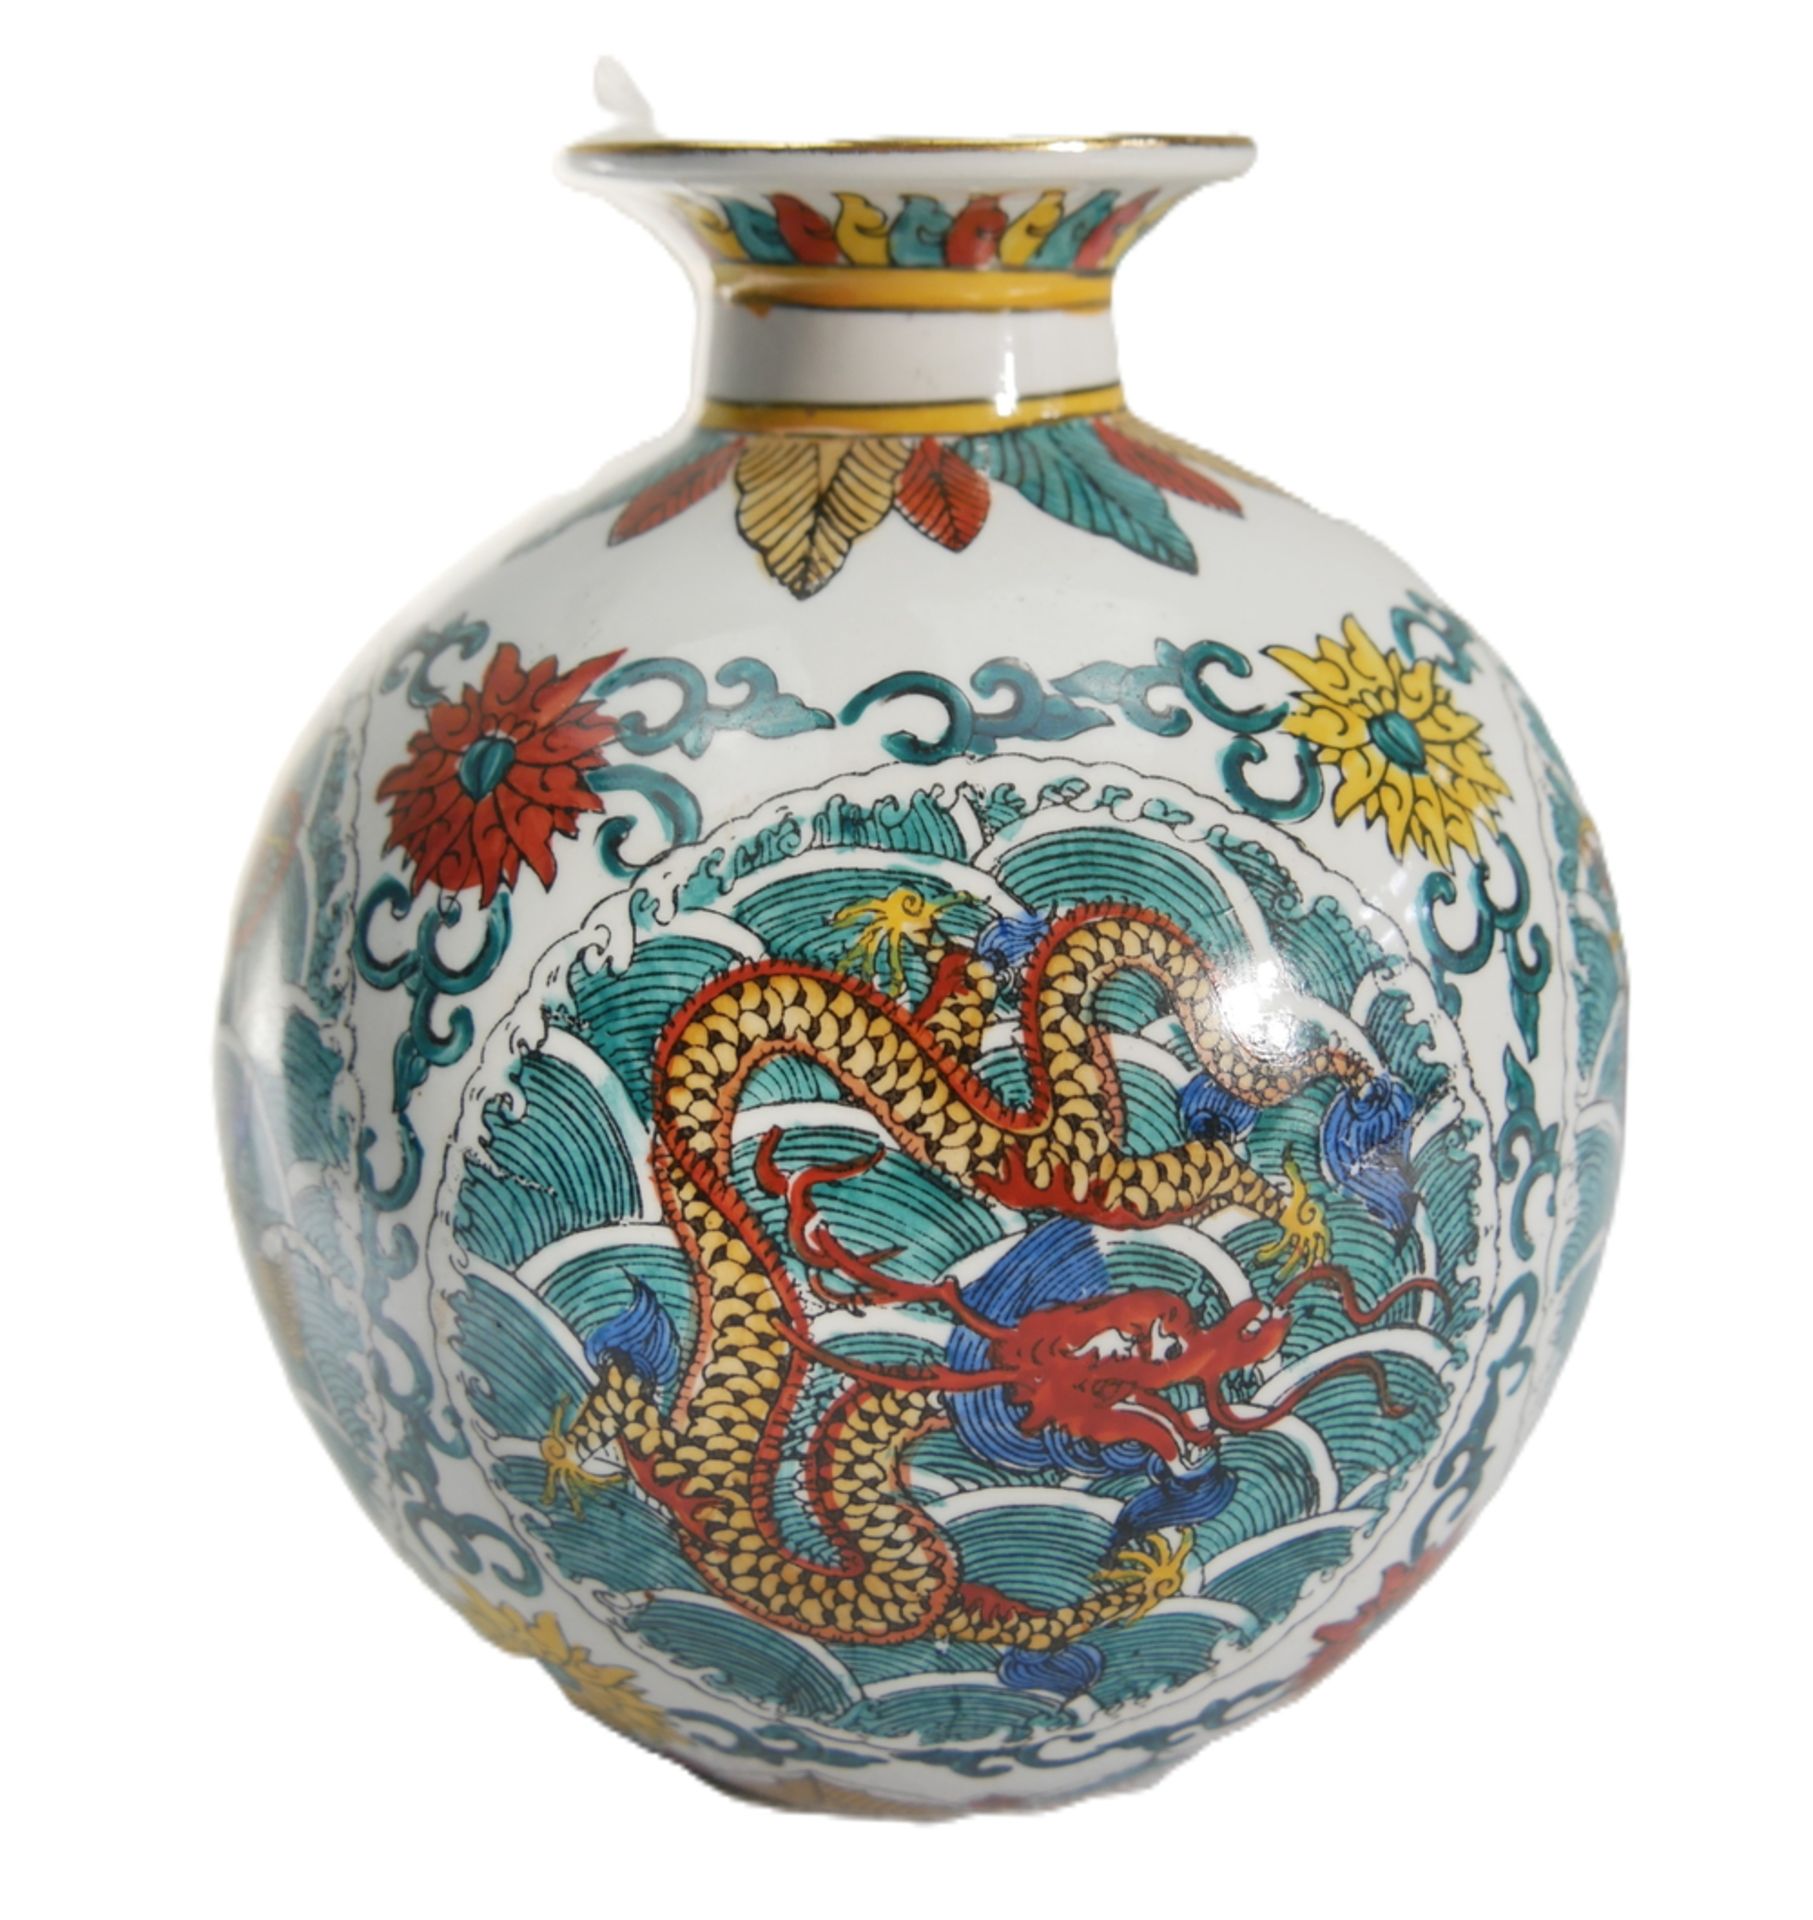 Porzellanvase China mit Drachenmotiv, am Boden gemarkt. Höhe ca. 18,5 cm - Bild 2 aus 3